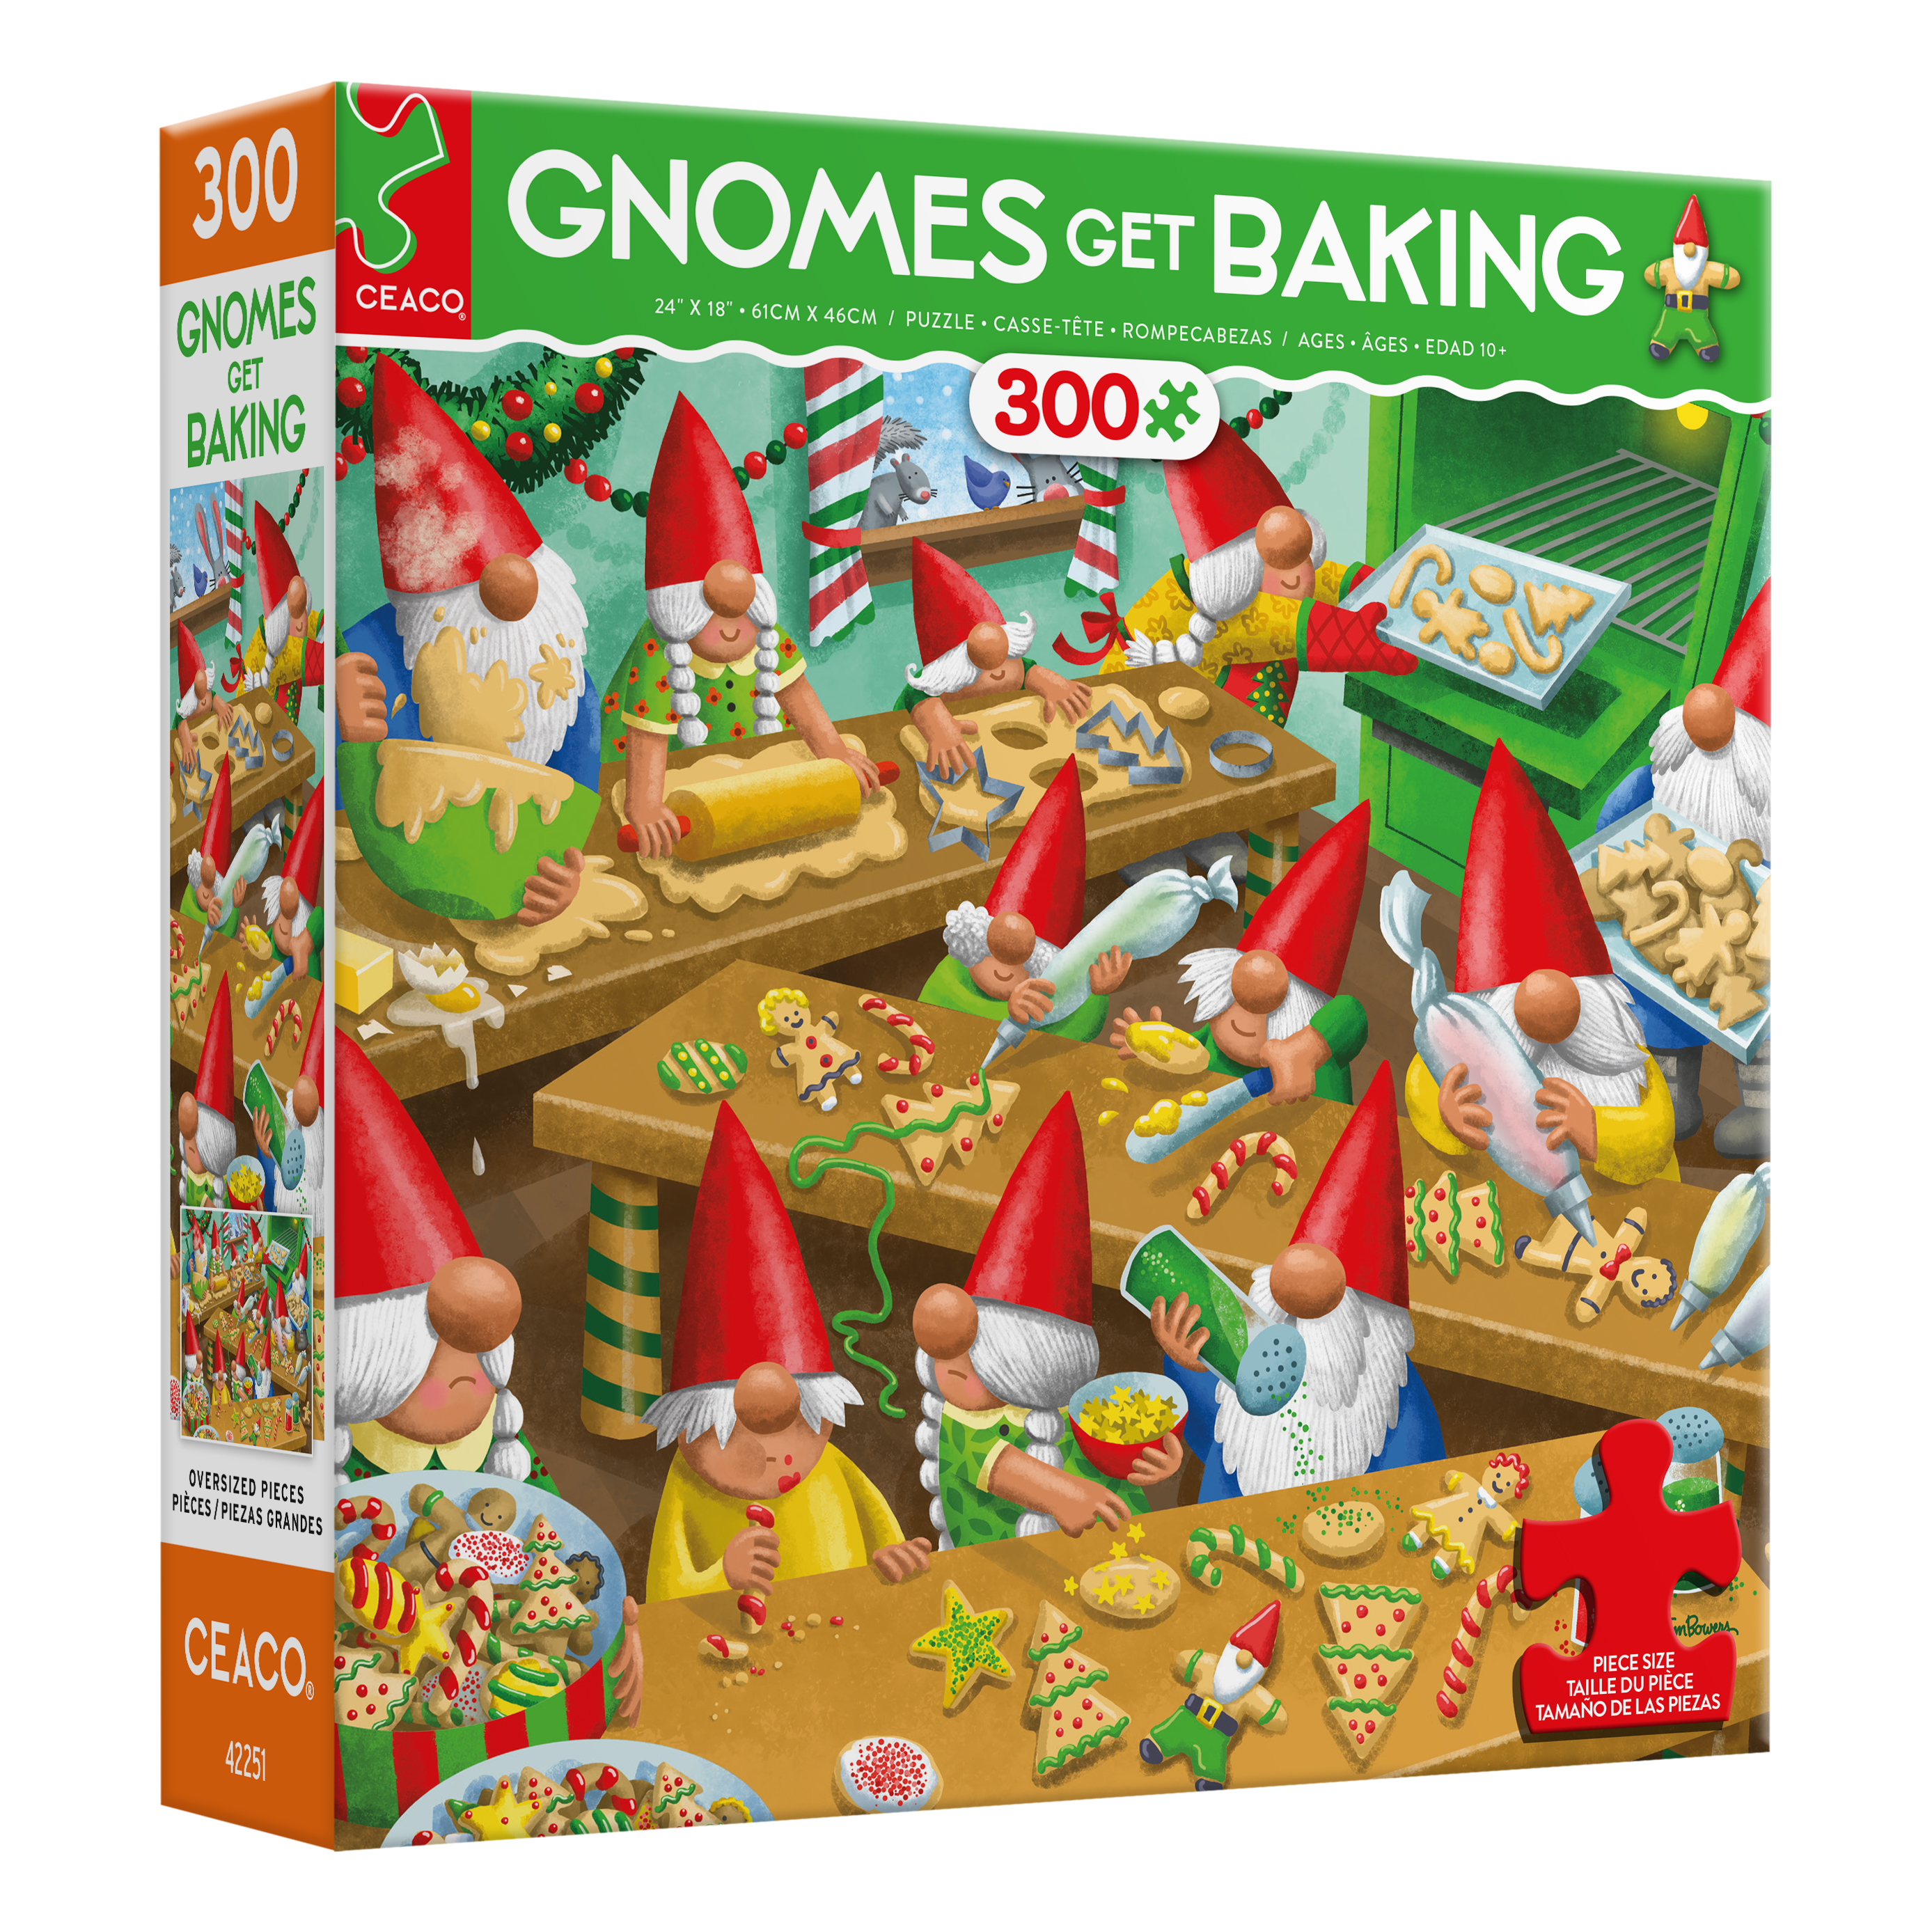 Gnomes Get Baking Oversized Holiday